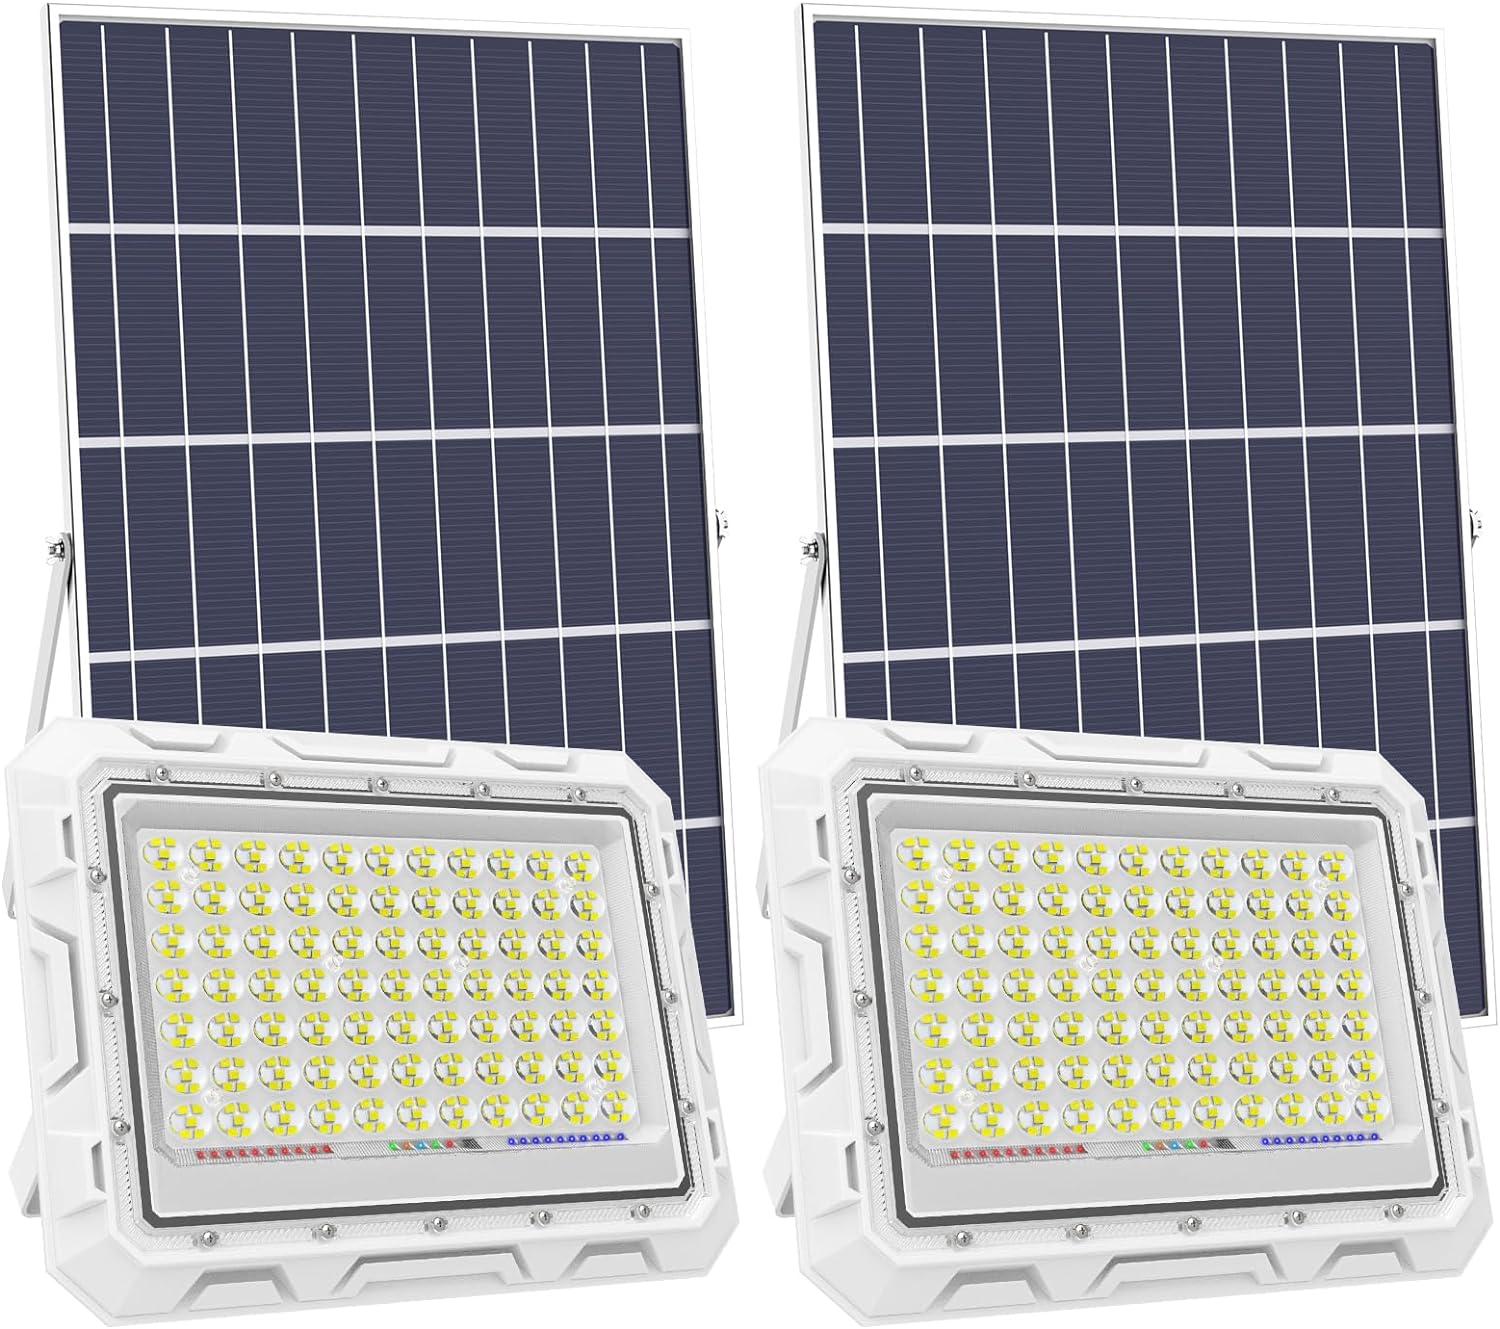 Hykoont ZZ060 600W LED Solar Flood Lights 2 Pack